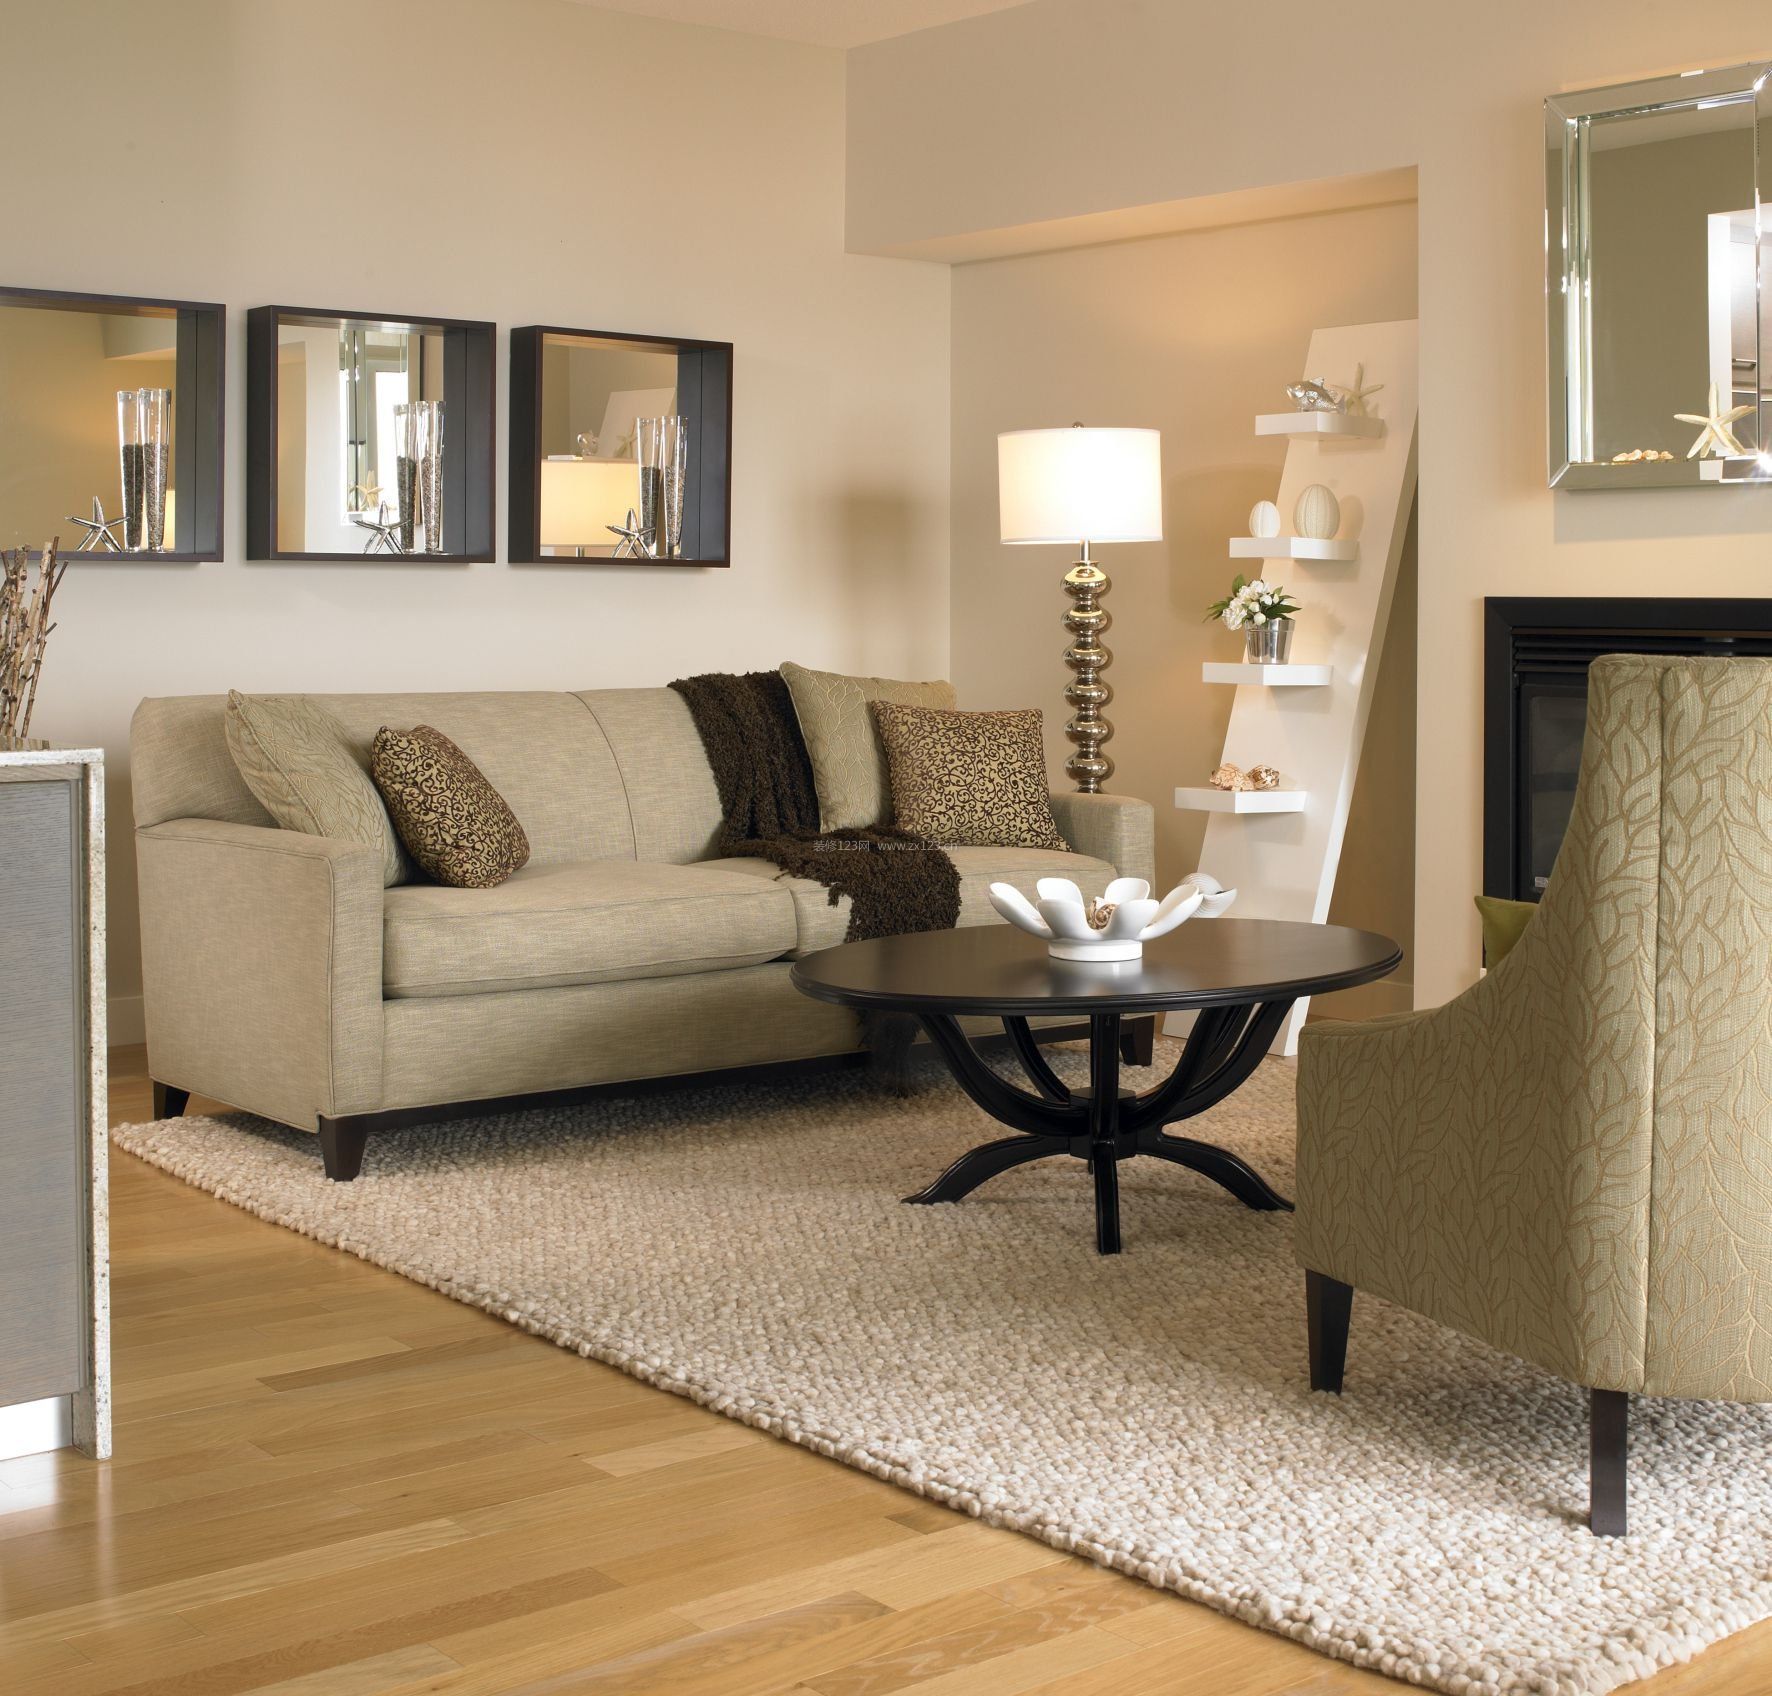 2021室内装修客厅地毯与沙发搭配图片